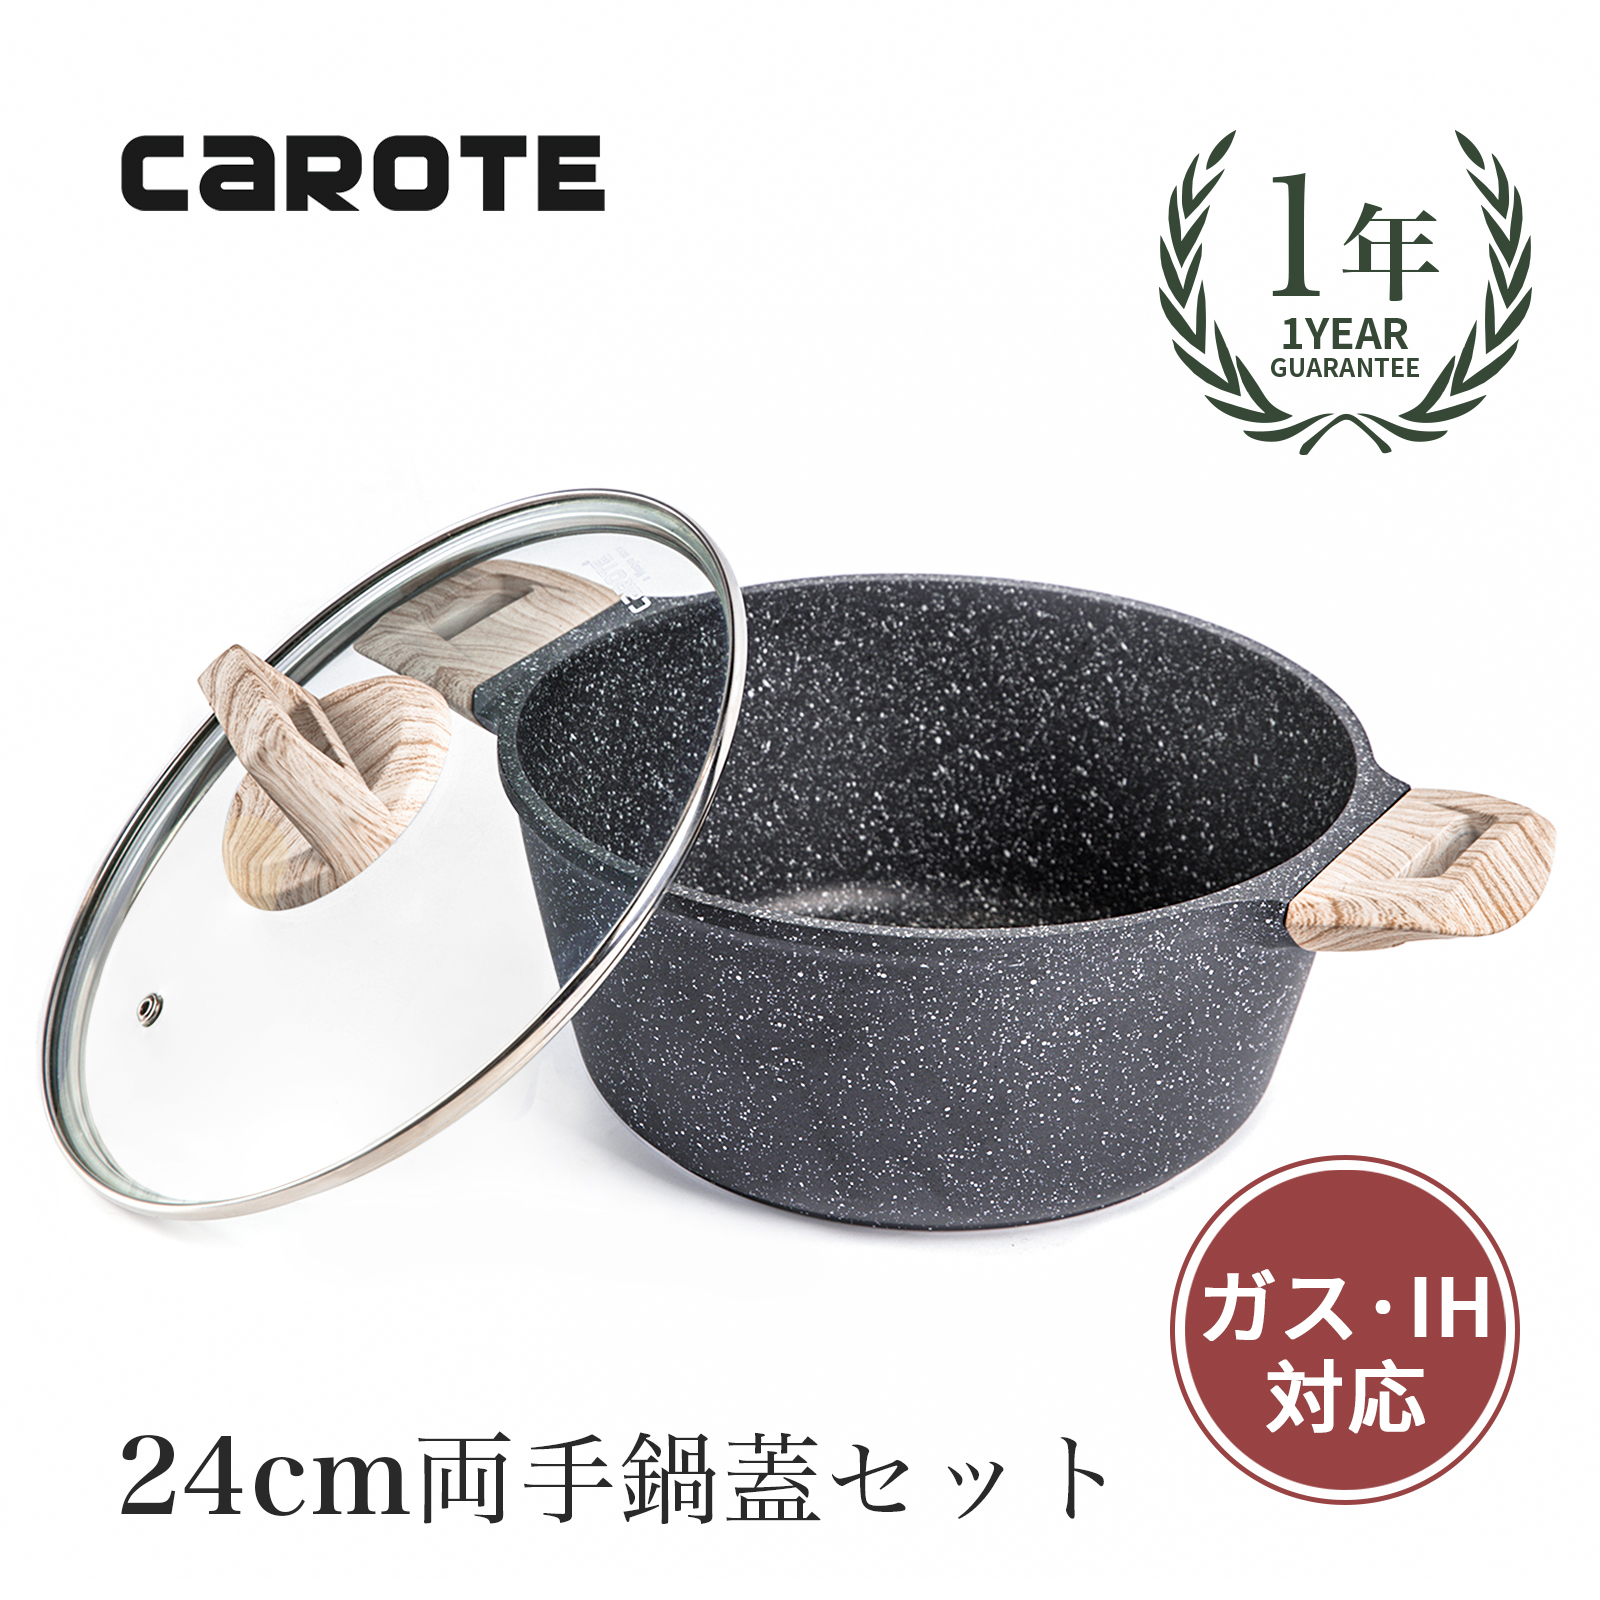 CAROTE 両手鍋24cm IH対応卓上鍋 蓋セット5層マーブルコート こびり付きにくく手入れ簡単EW(24cm)